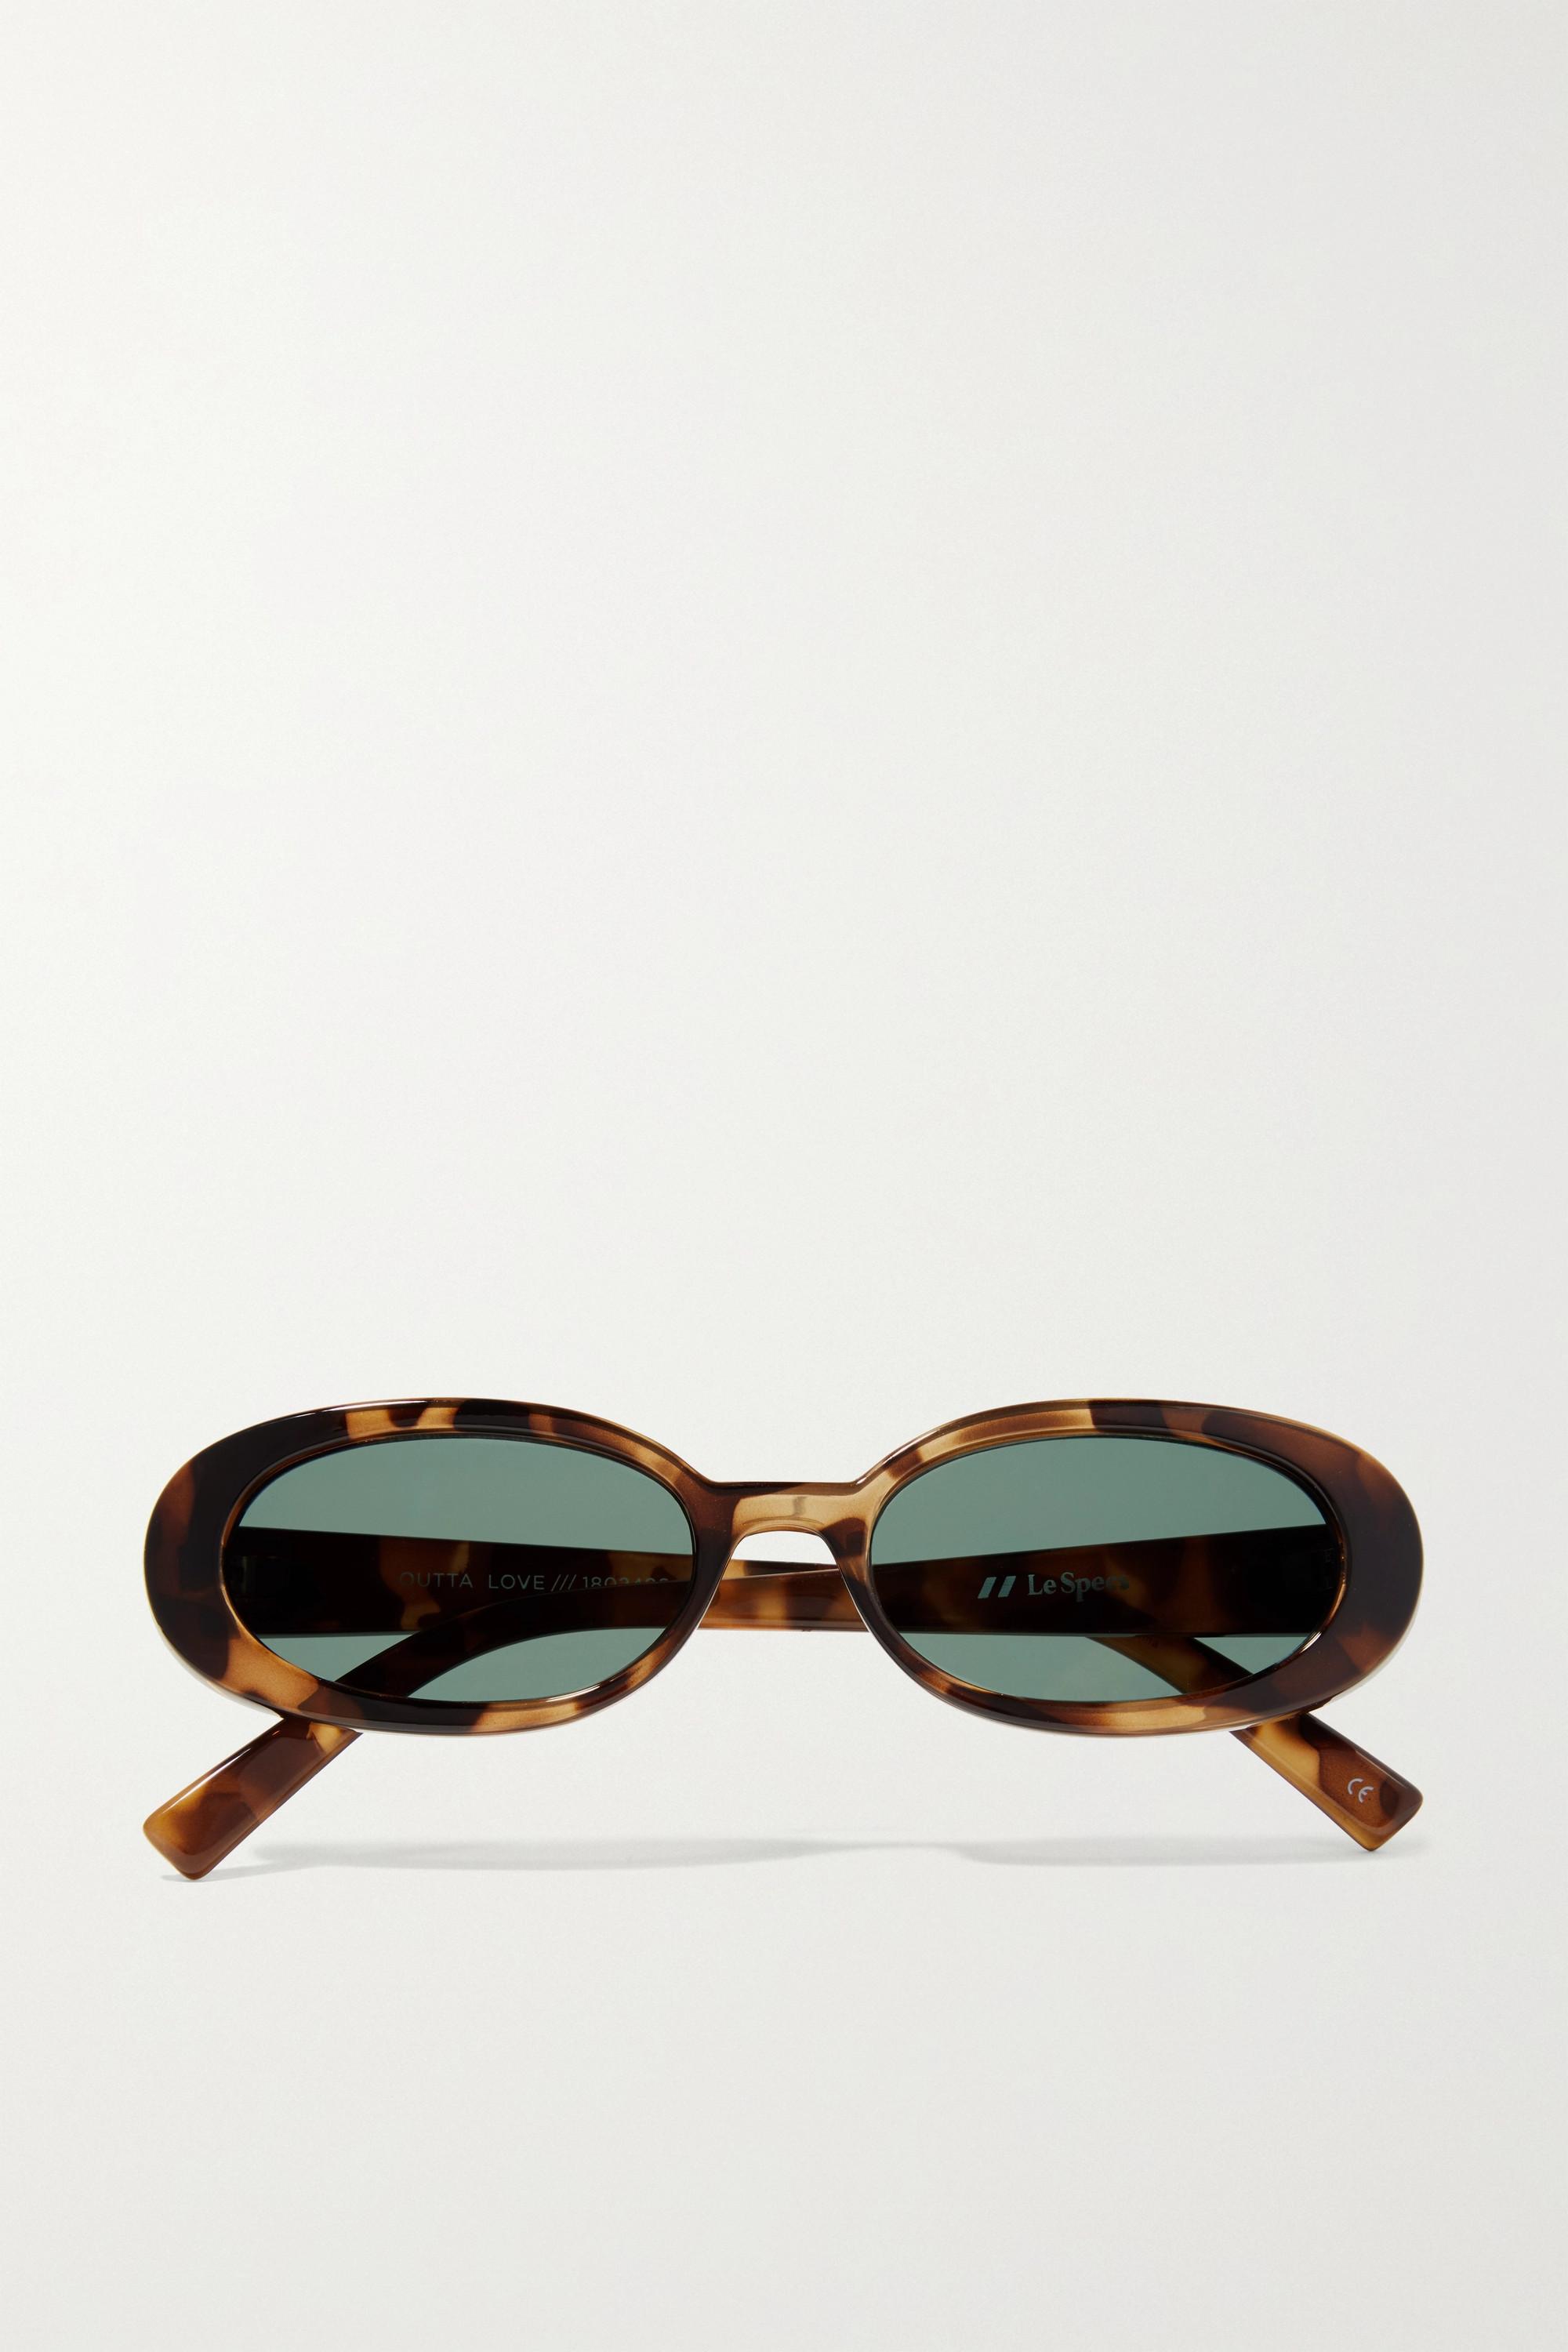 Le Specs Outta Love Sonnenbrille Mit Ovalem Rahmen Aus Azetat In Hornoptik  | Lyst DE